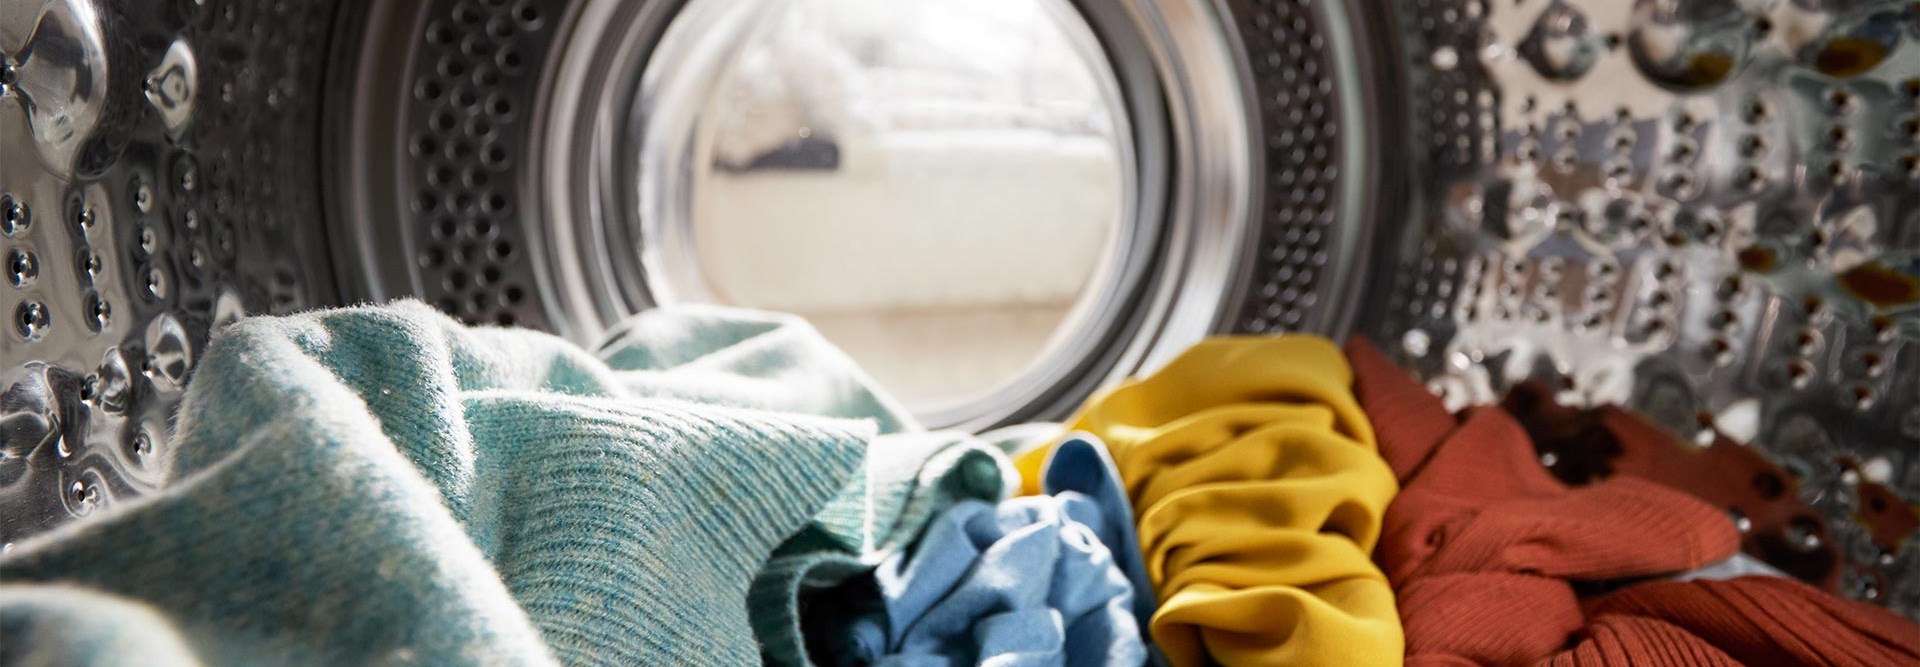 Vale a pena comprar uma máquina de secar roupa?